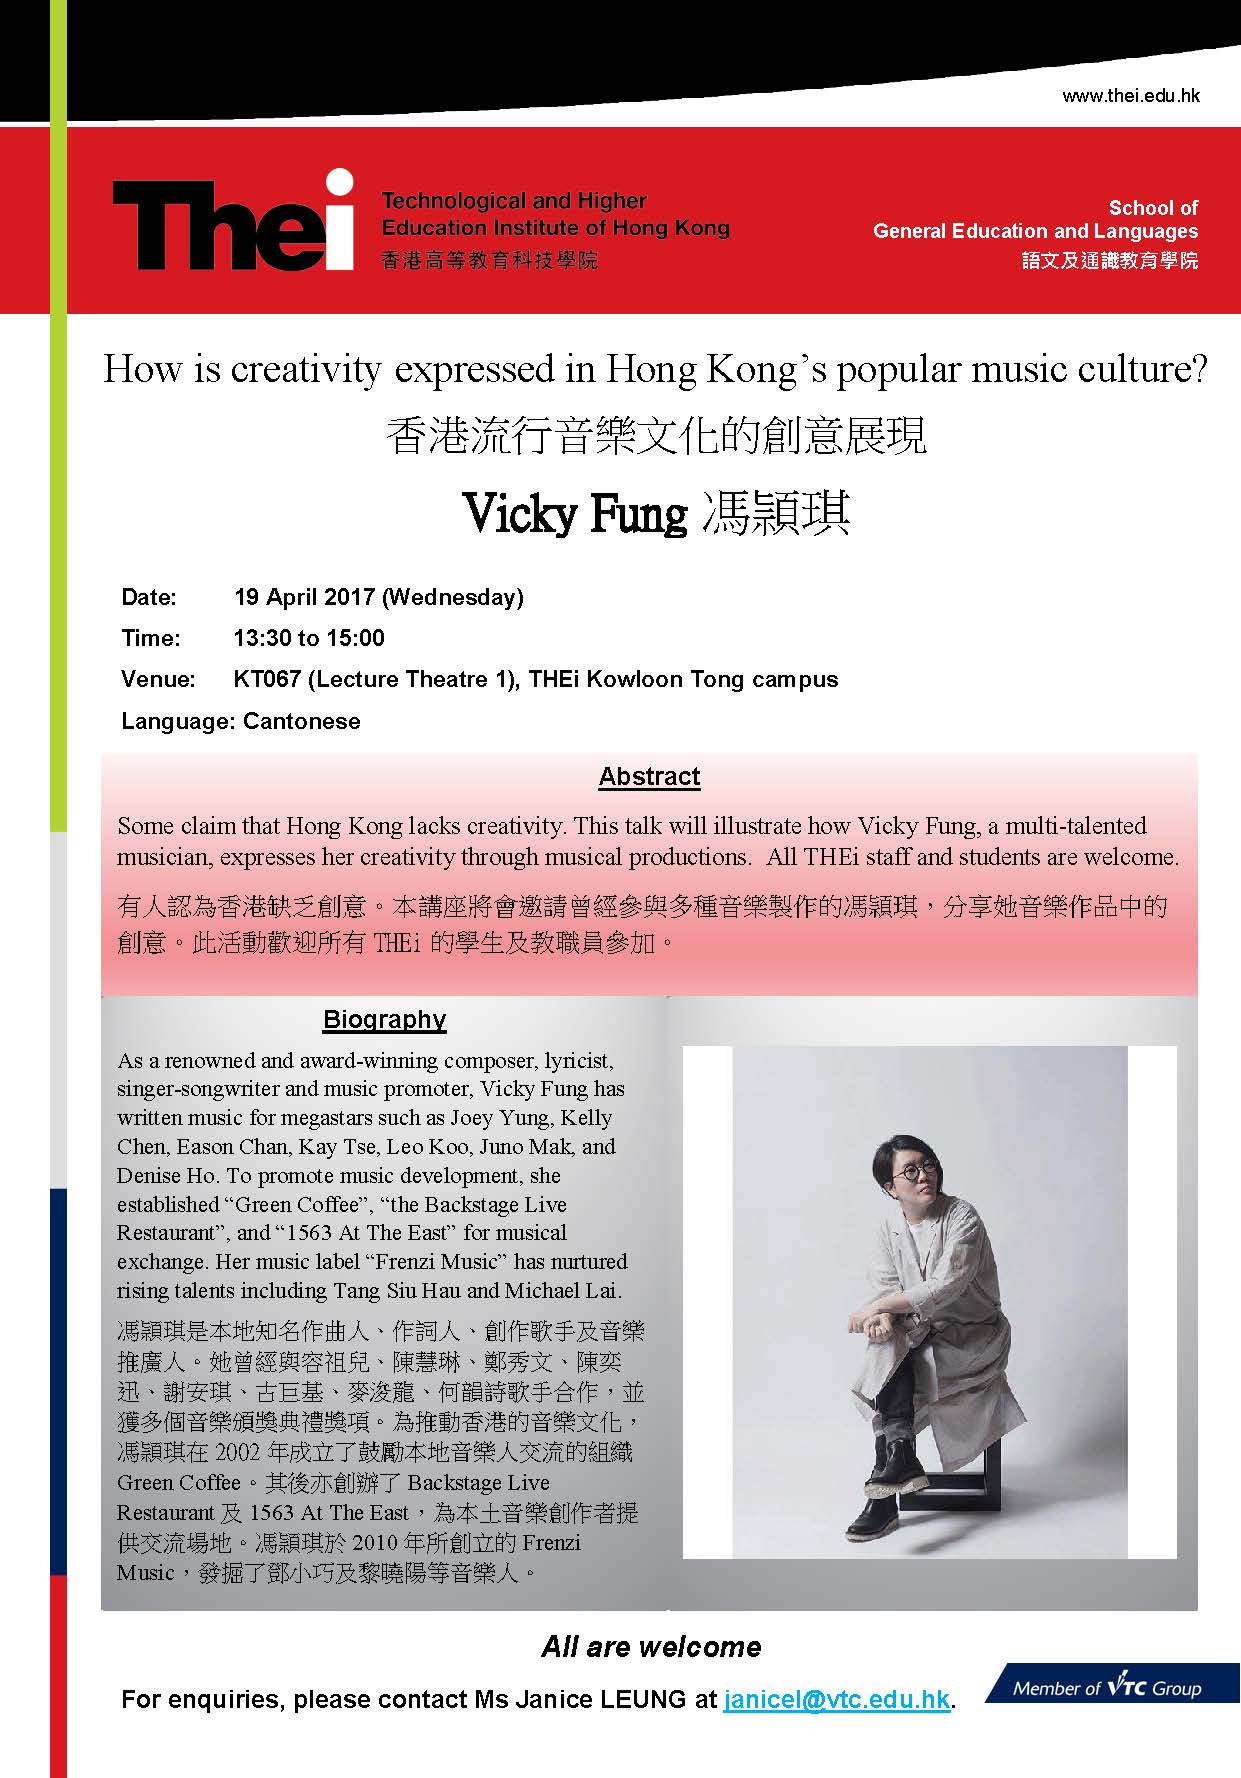 香港流行音樂文化的創意展現